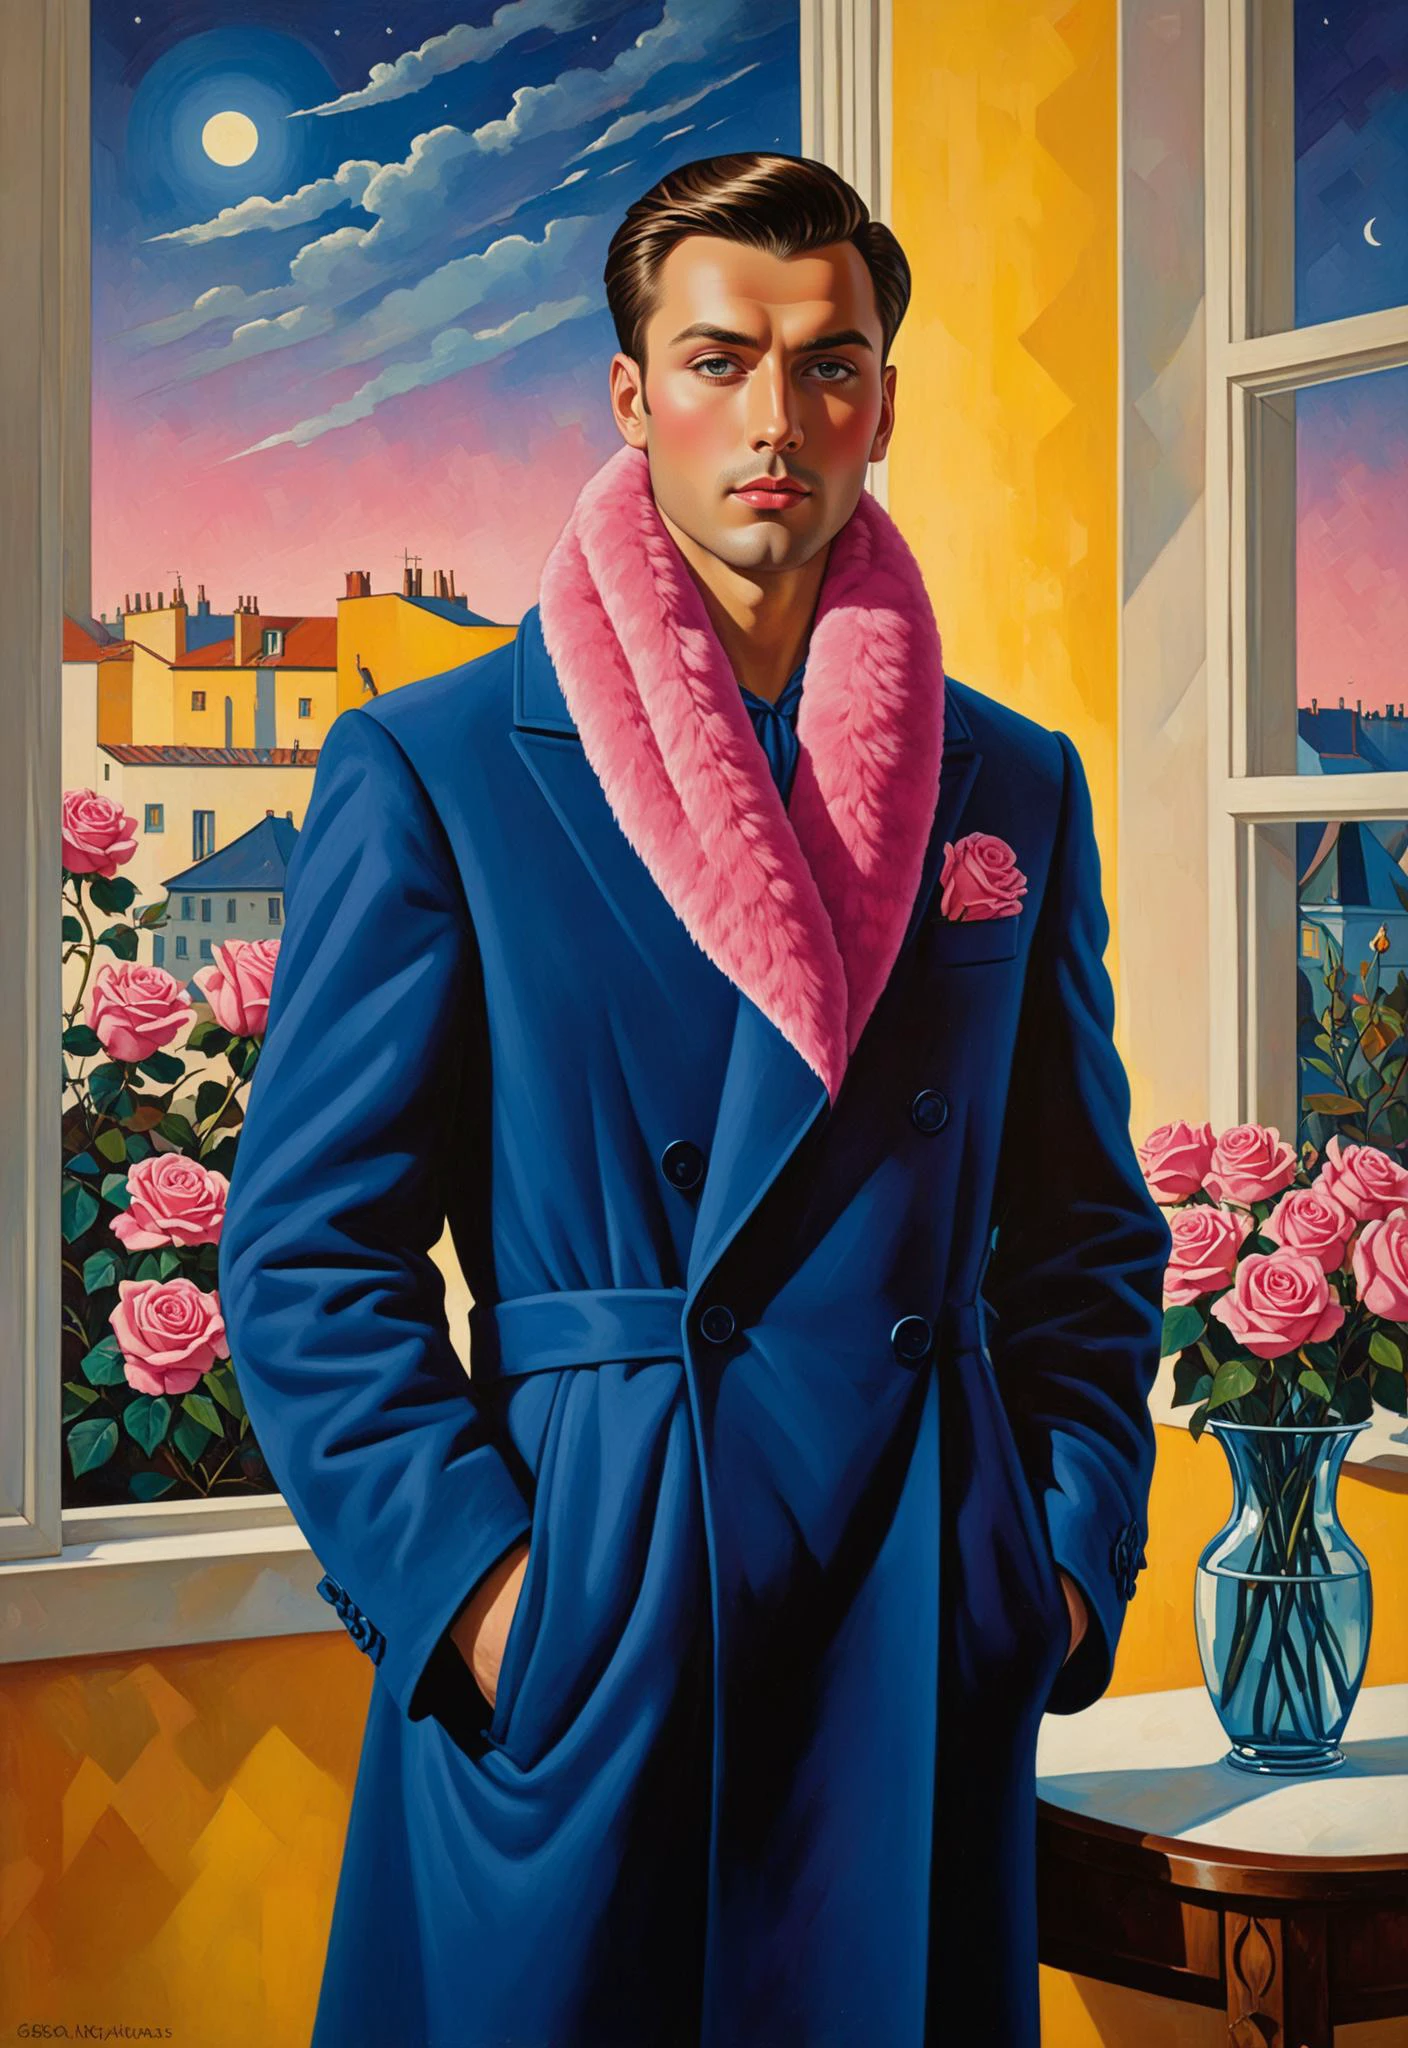 (ゲオルギー・クラソフのアート:1.5), 青いロングコートとピンクの毛皮のスカーフを身に着けた、ショートヘアのエレガントな男性の絵, ゴットフリート・ヘルンヴァイン風, 黄色の壁の背景, 左側の窓, 右下の角にバラ, そして夜空の月明かり, ジョン・ブラックのスタイル